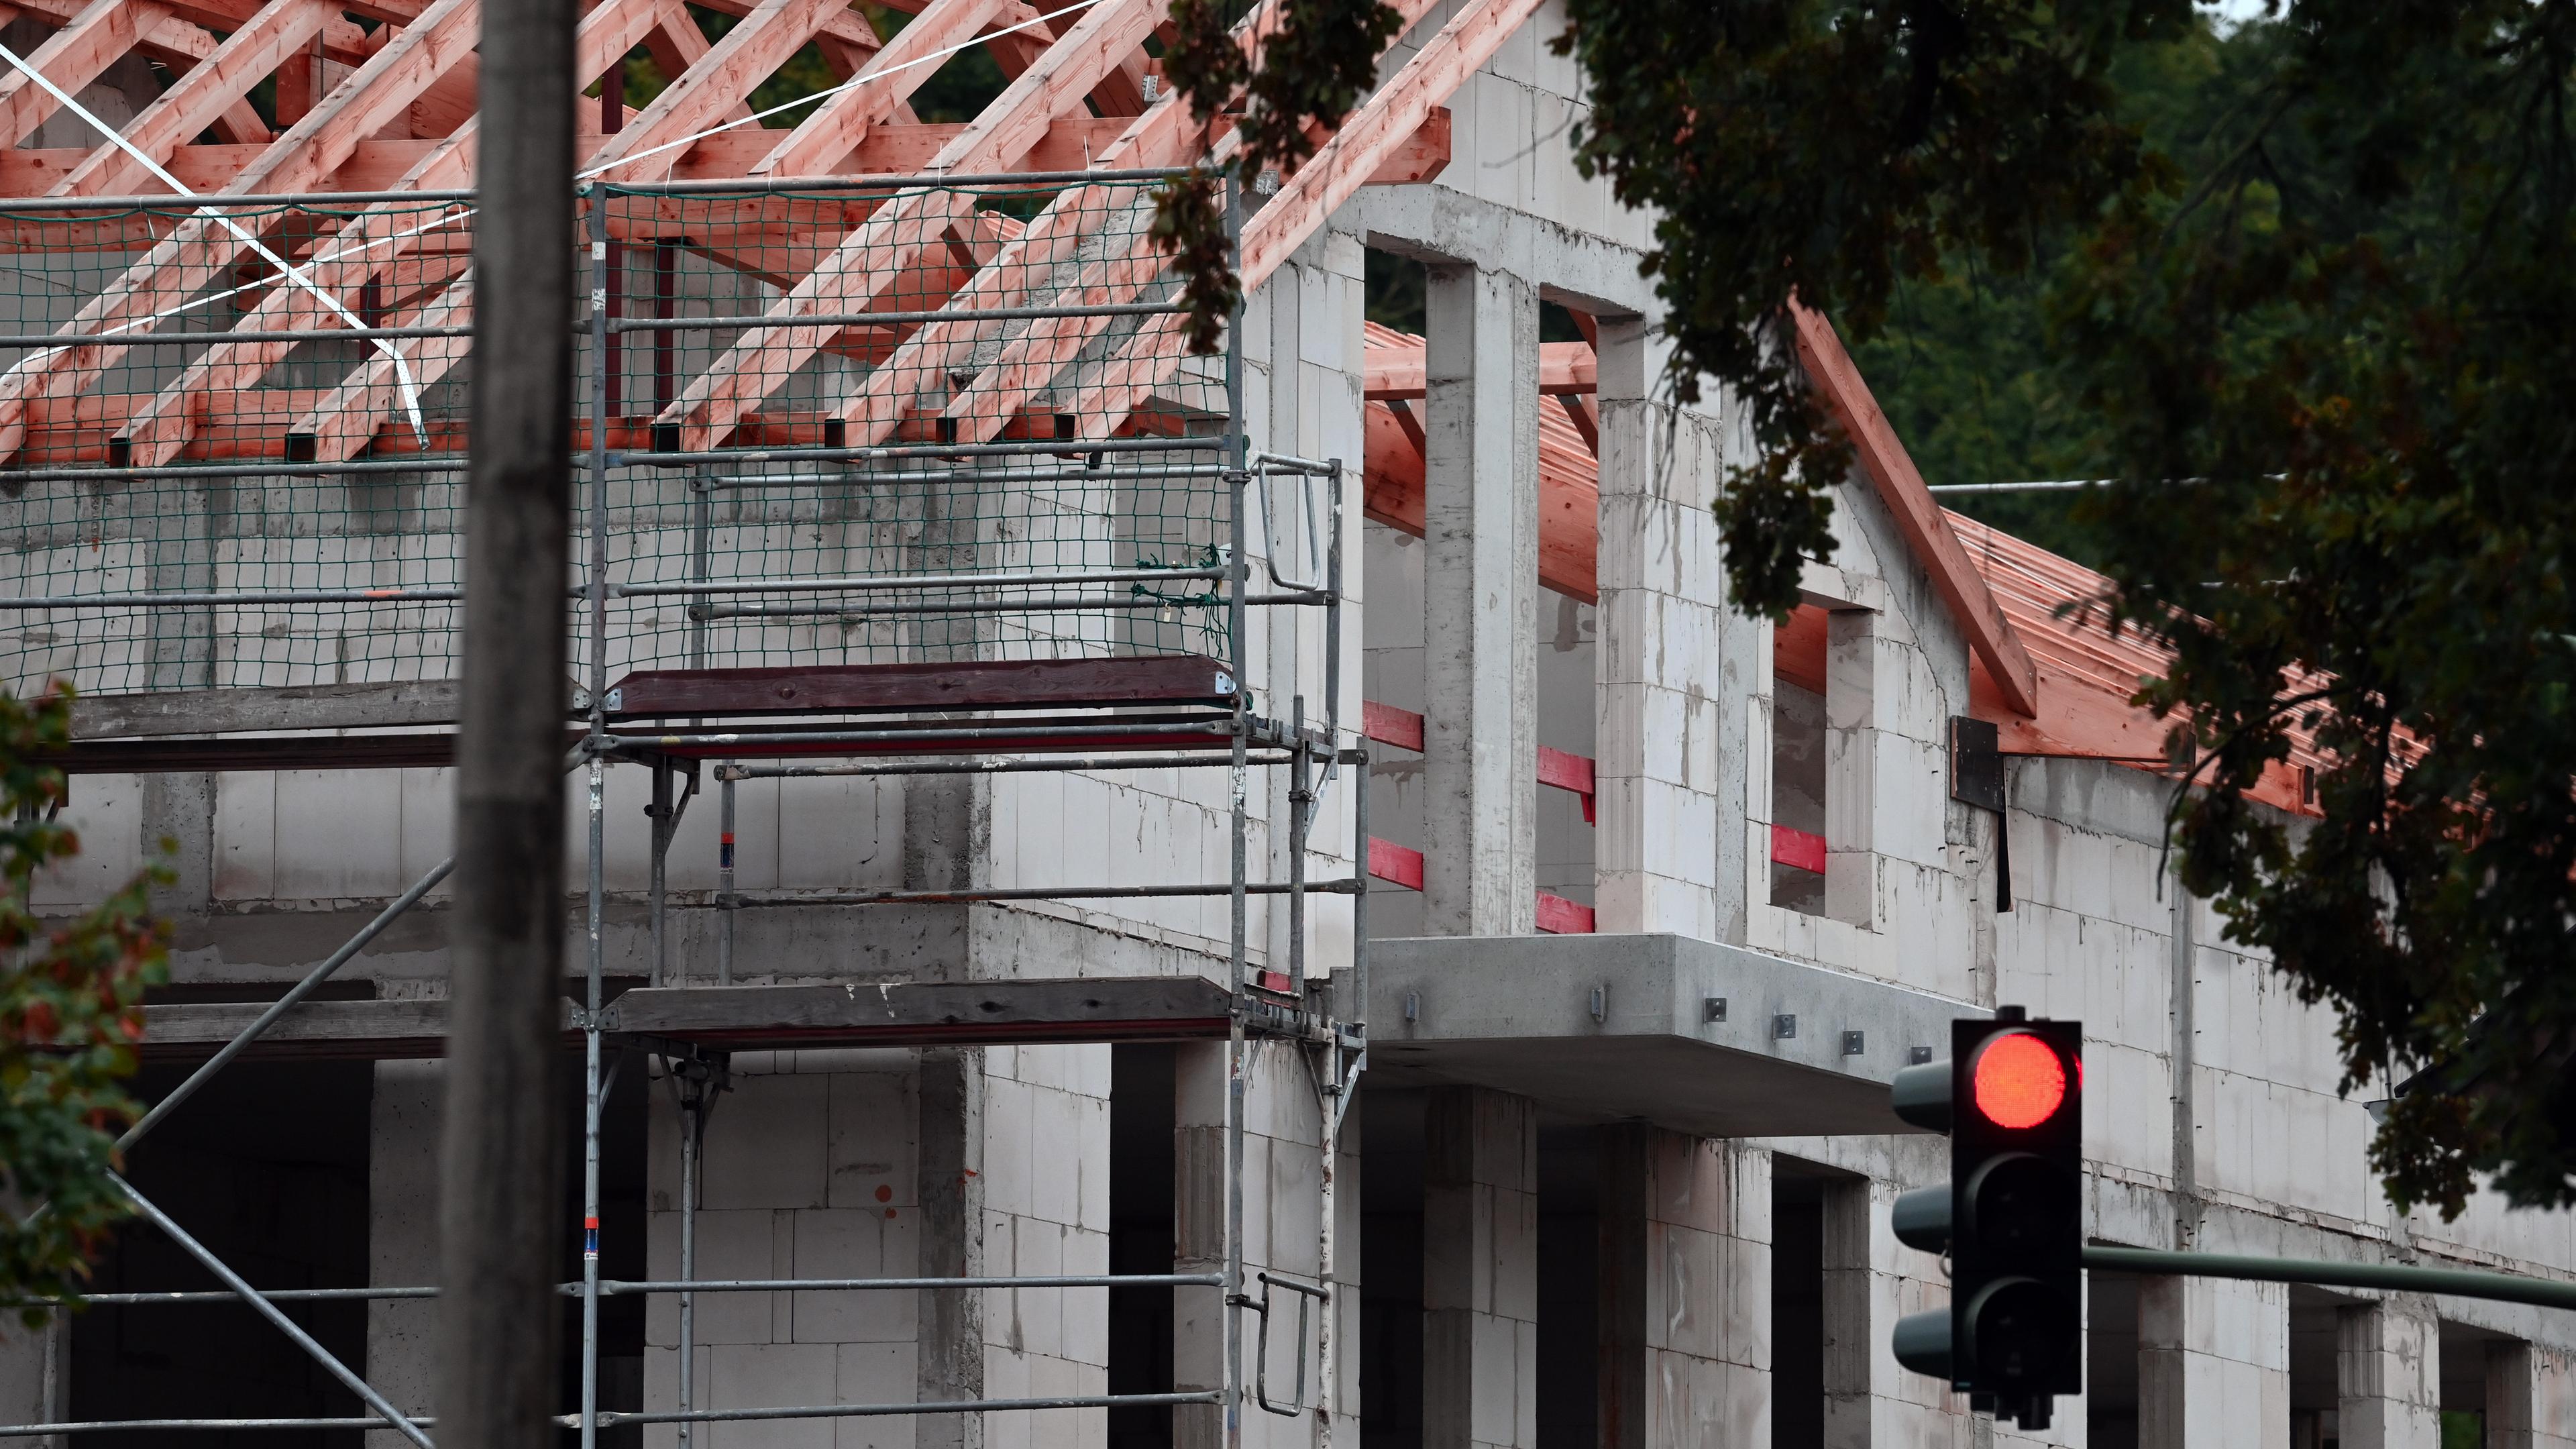  Ein Baugerüst steht im Potsdamer Ortsteil Bornim an dem Rohbau eines Mehrfamilienhauses.